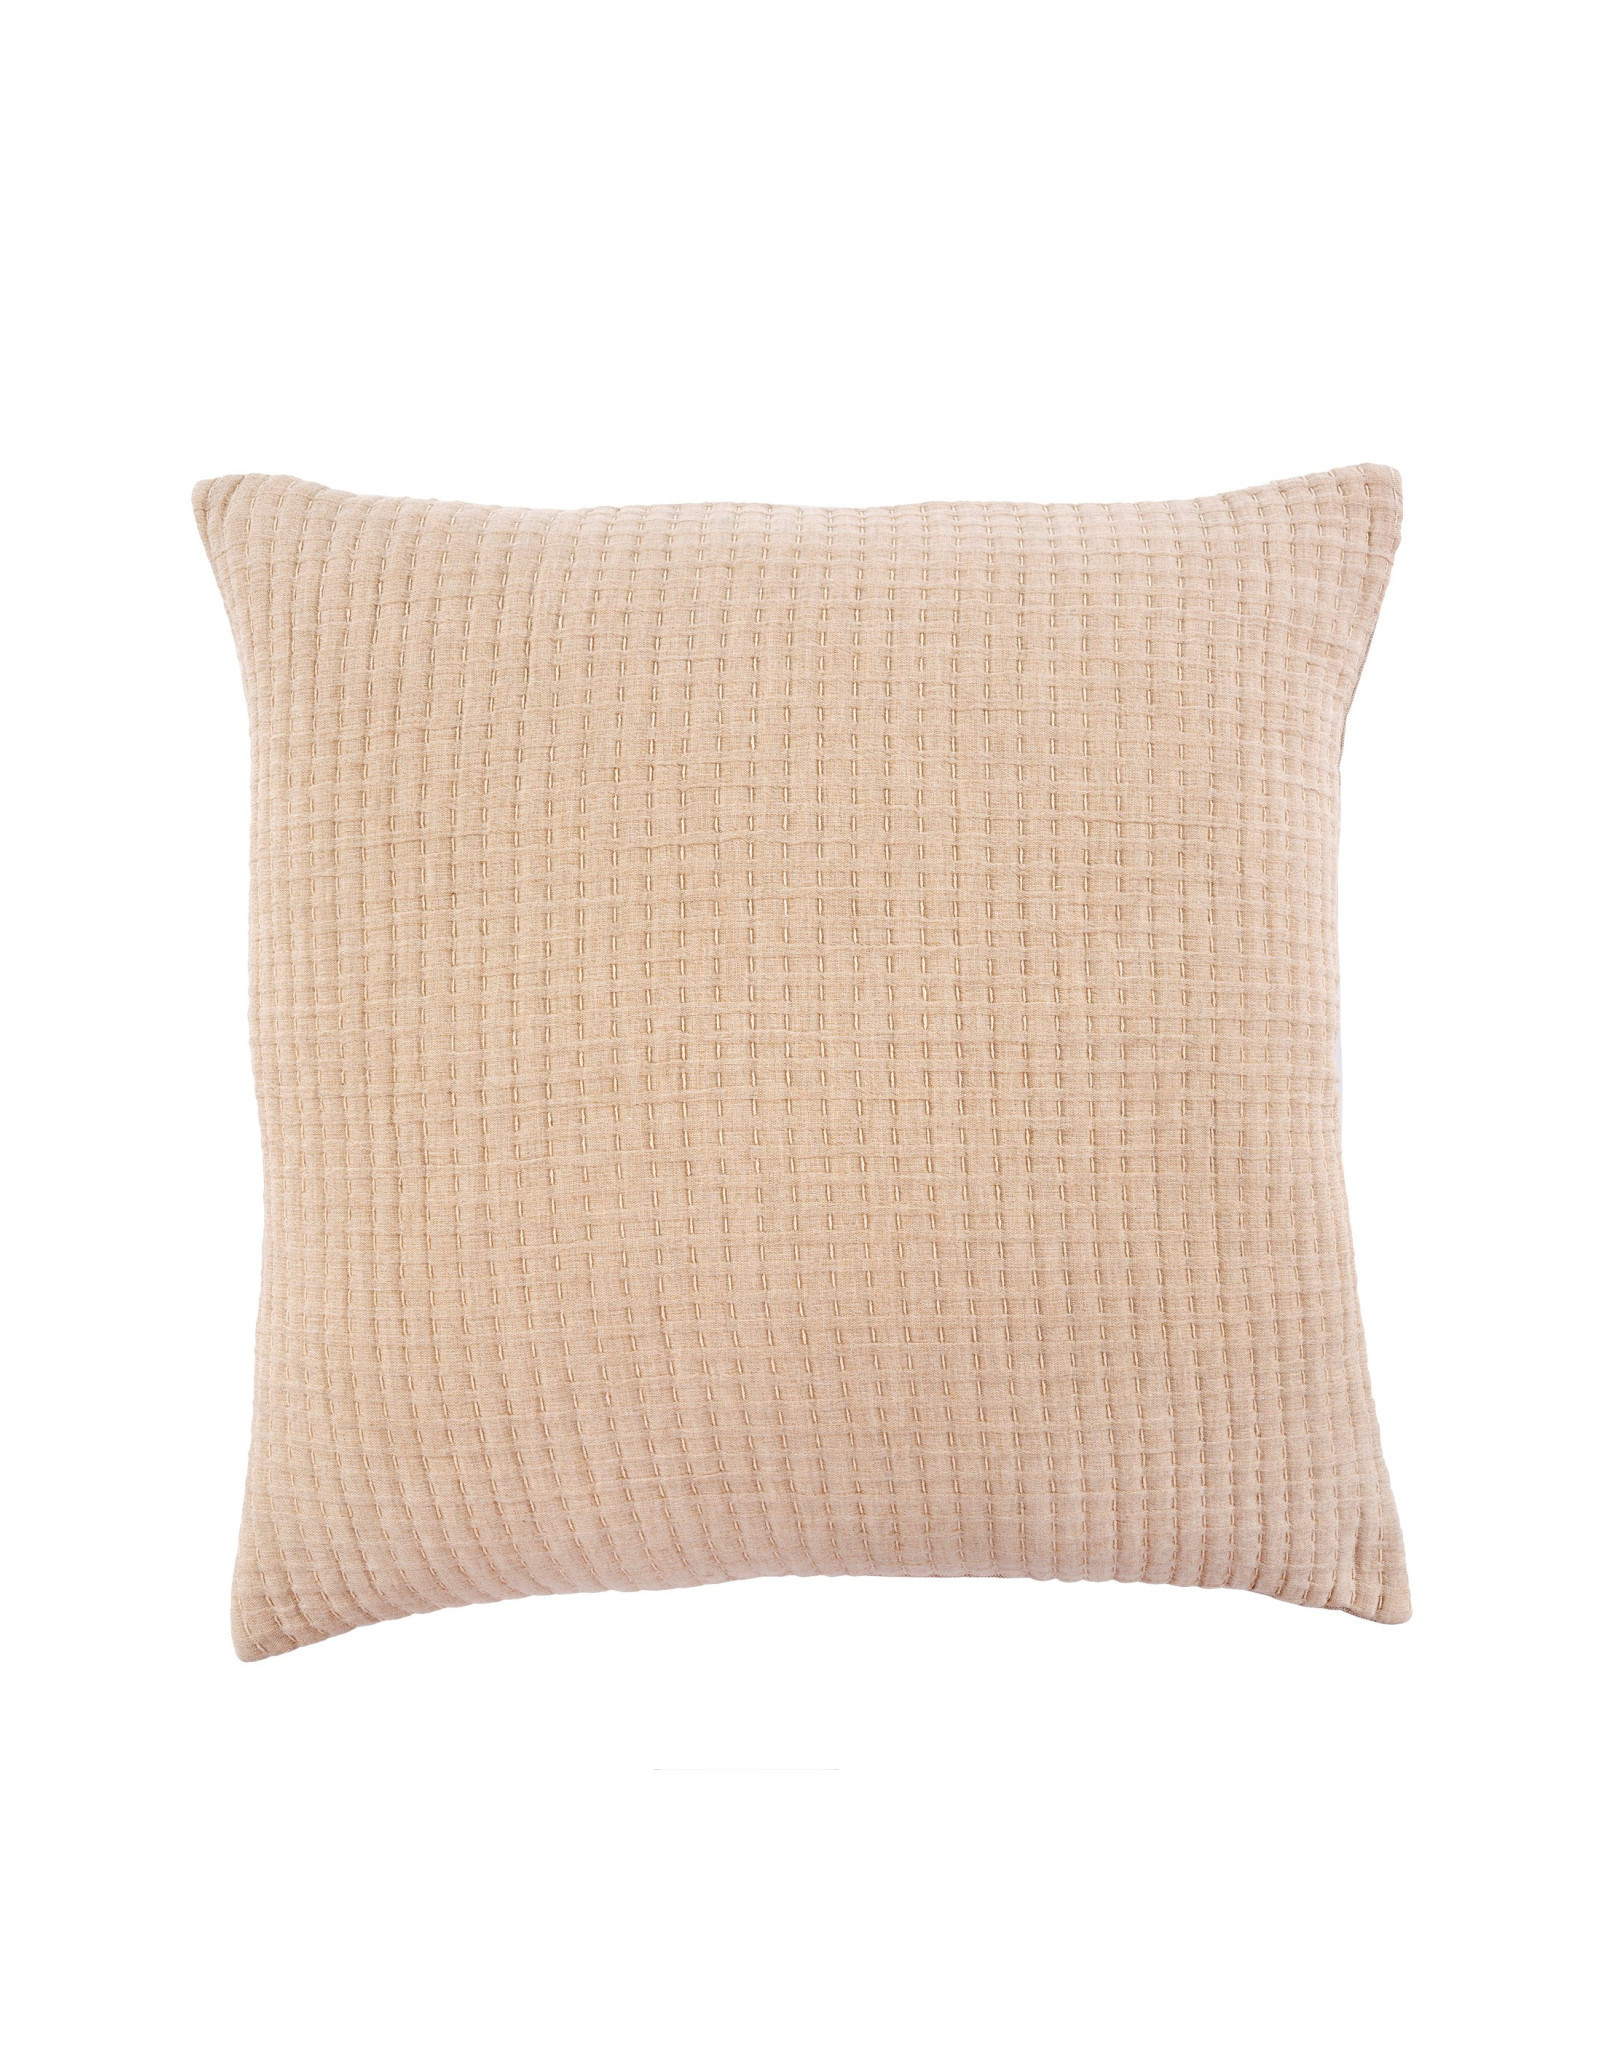 Indaba Kantha-Stitched Pillow - Chambray